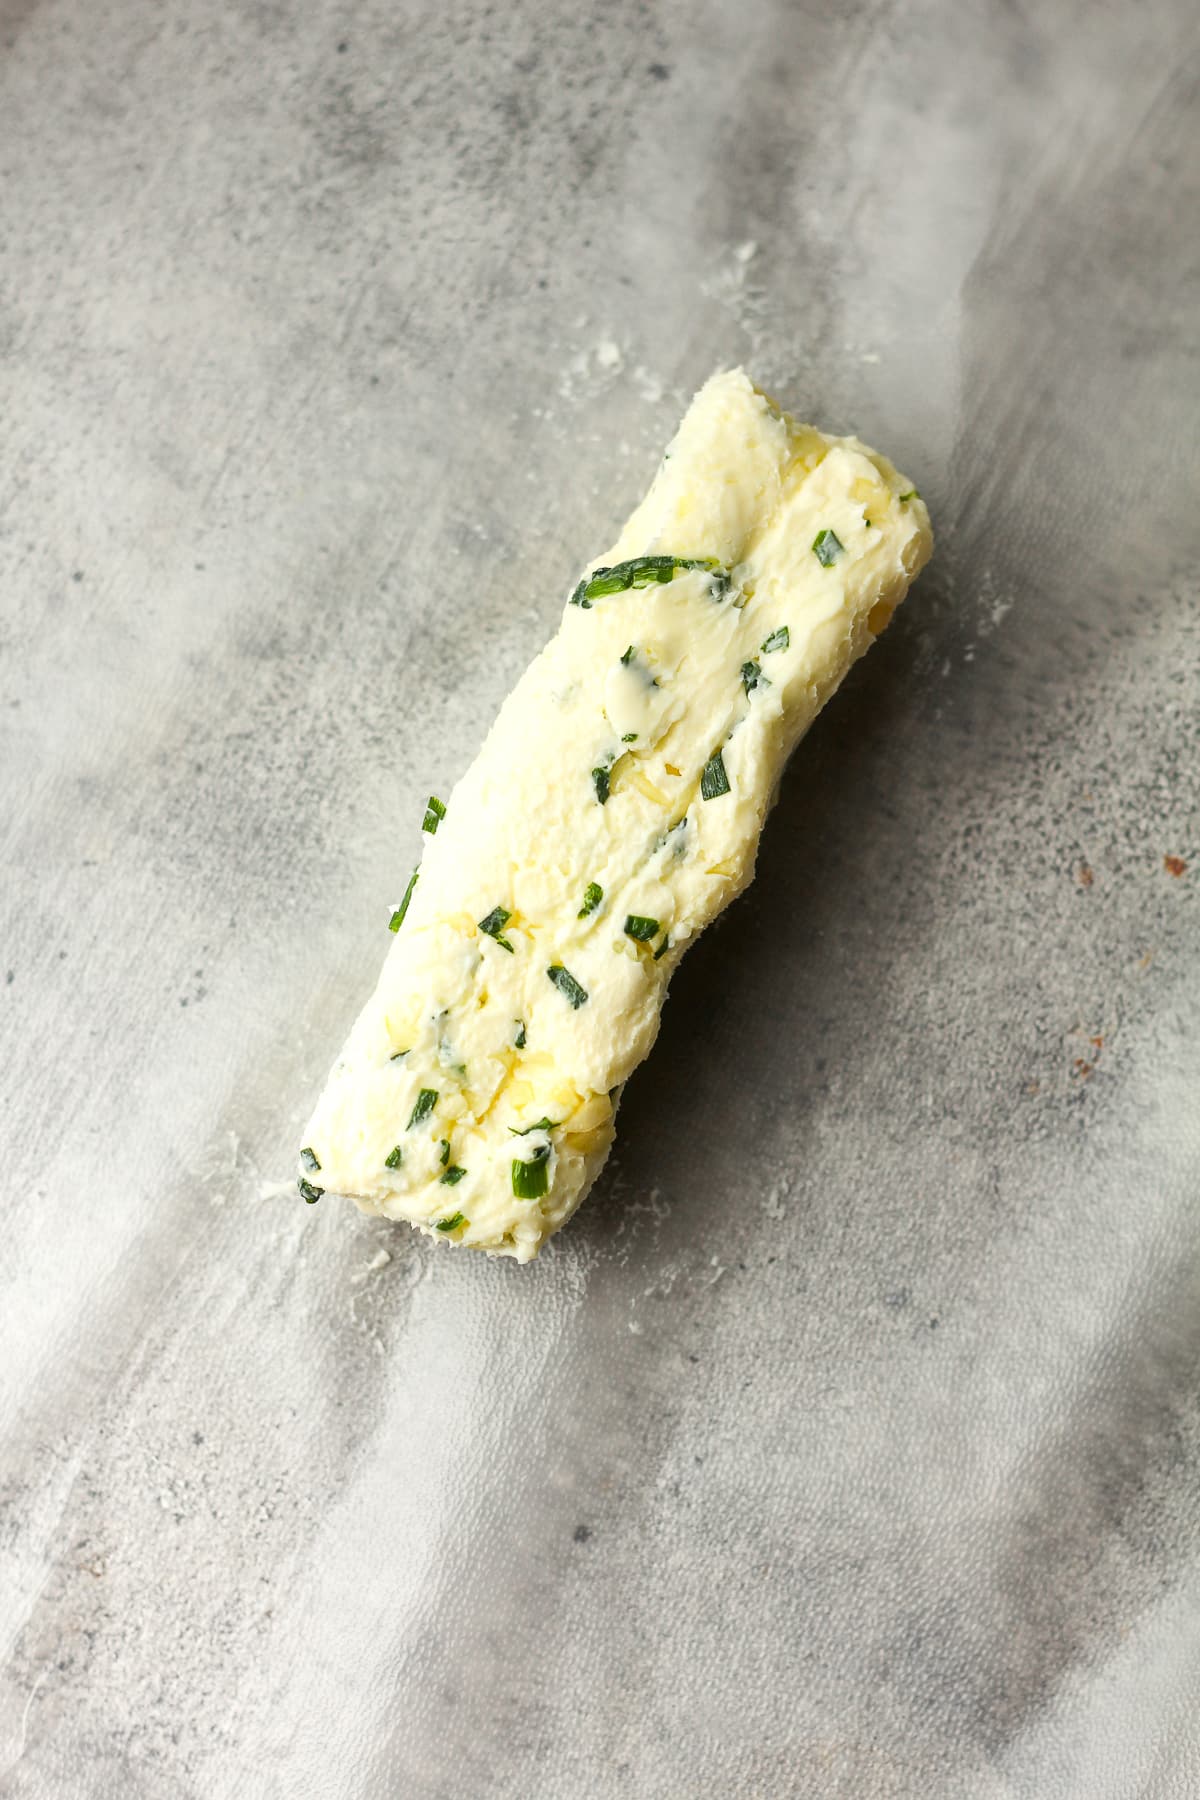 A log of the garlic butter.